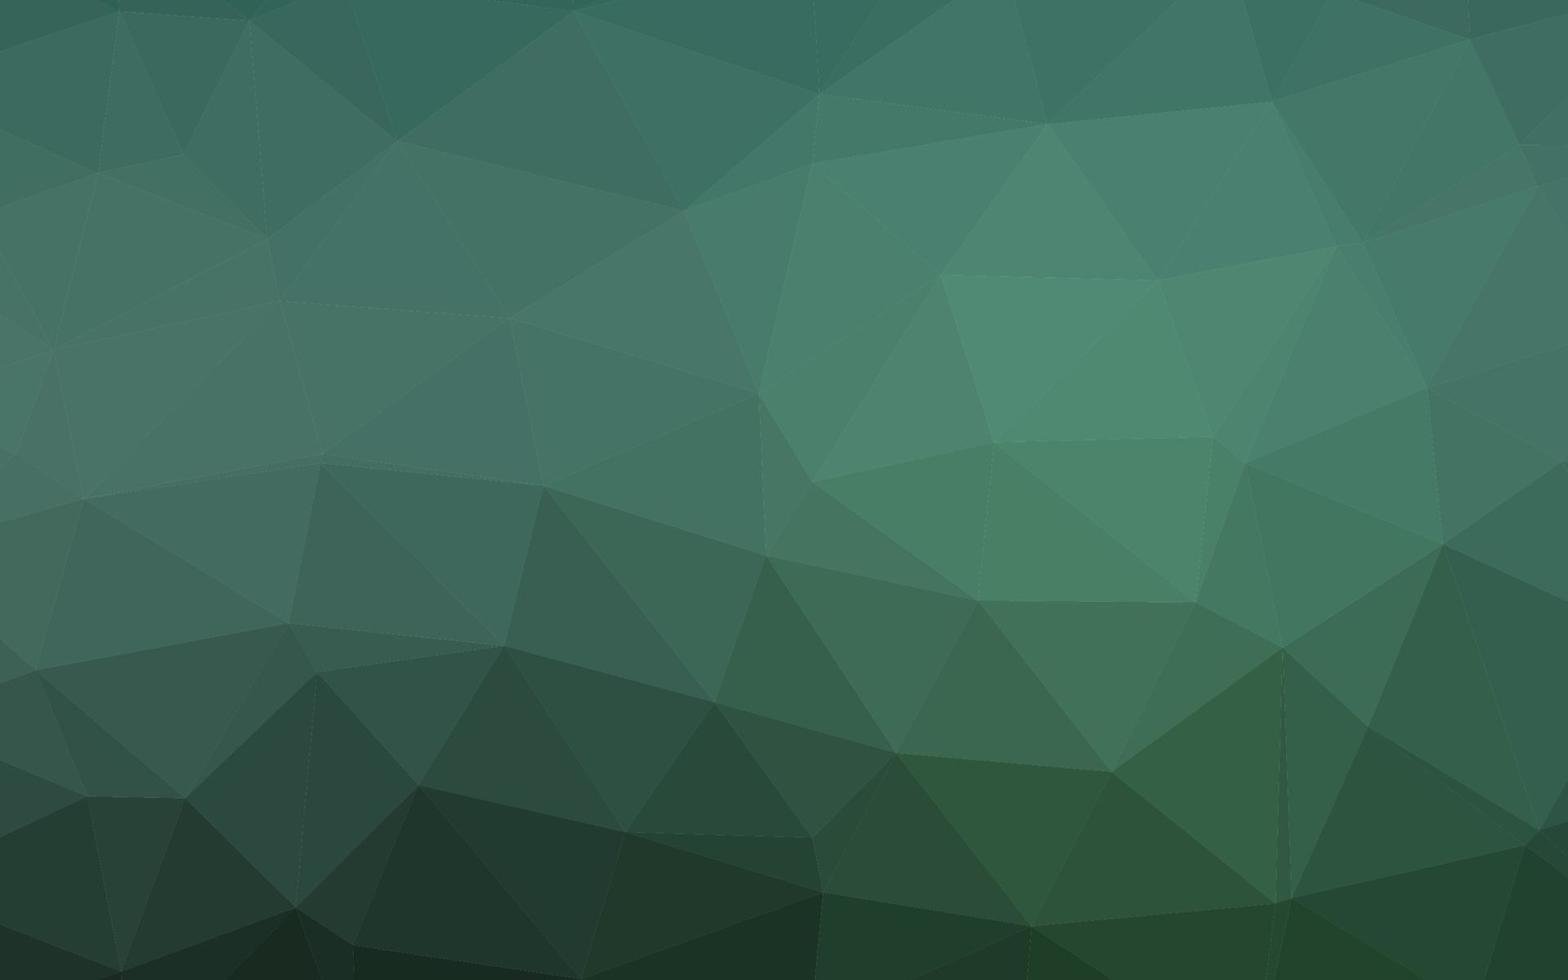 textura de triángulo borroso vector verde claro.